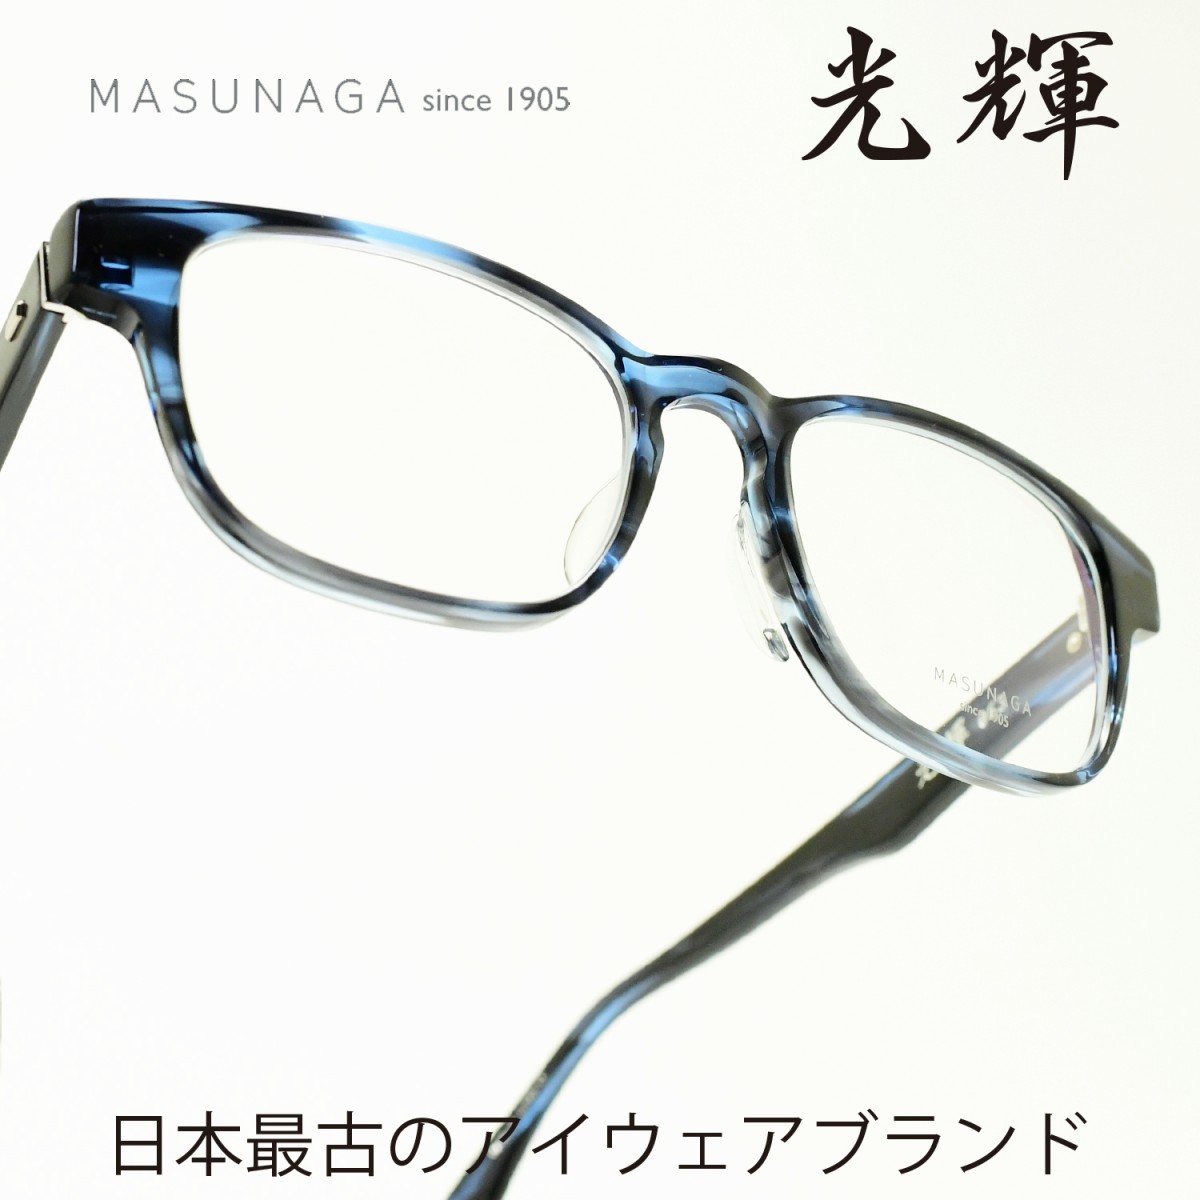 楽天市場 増永眼鏡 Masunaga光輝 063 Col 49 Black Matteメガネ 眼鏡 めがね メンズ レディース おしゃれブランド 人気 おすすめ フレーム 流行り 度付き レンズ デコリンメガネ